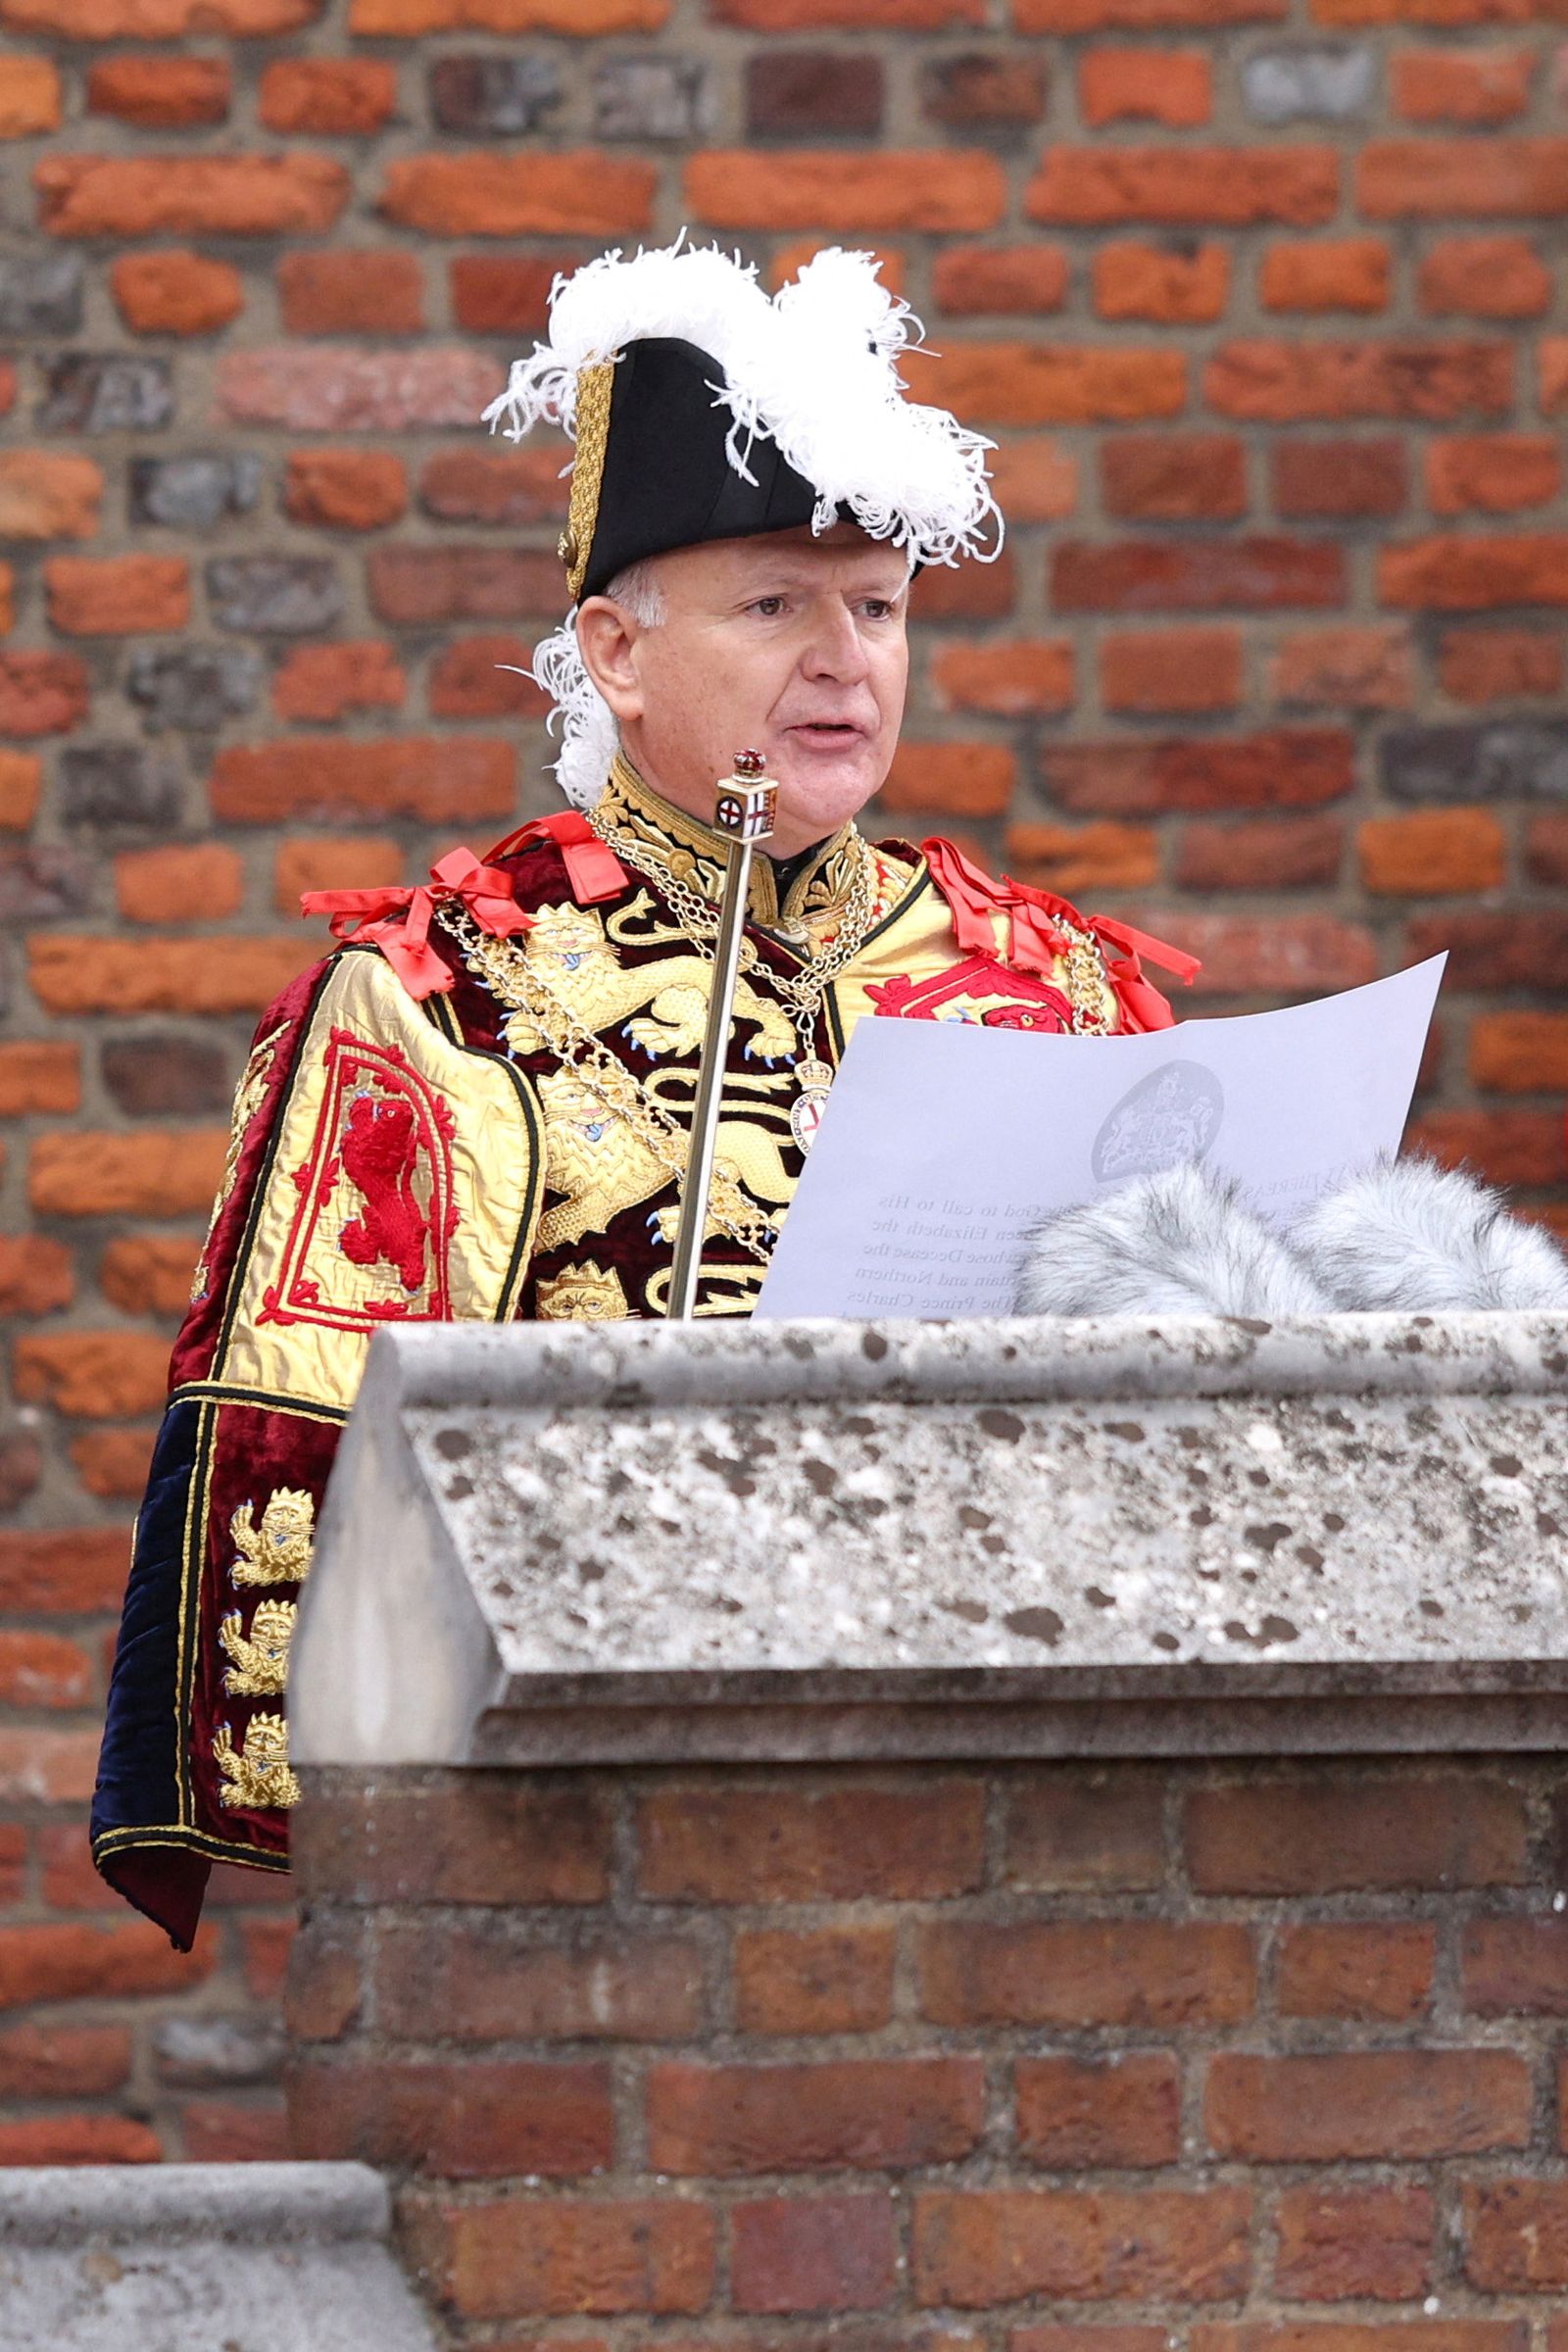 كبير الرسل في بريطانيا ديفيد وايت يقرأ البيان الرسمي لتنصيب تشارلز الثالث ملكاً من شرفة التنصيب في قصر سانت جيمس المطلة على ساحة 